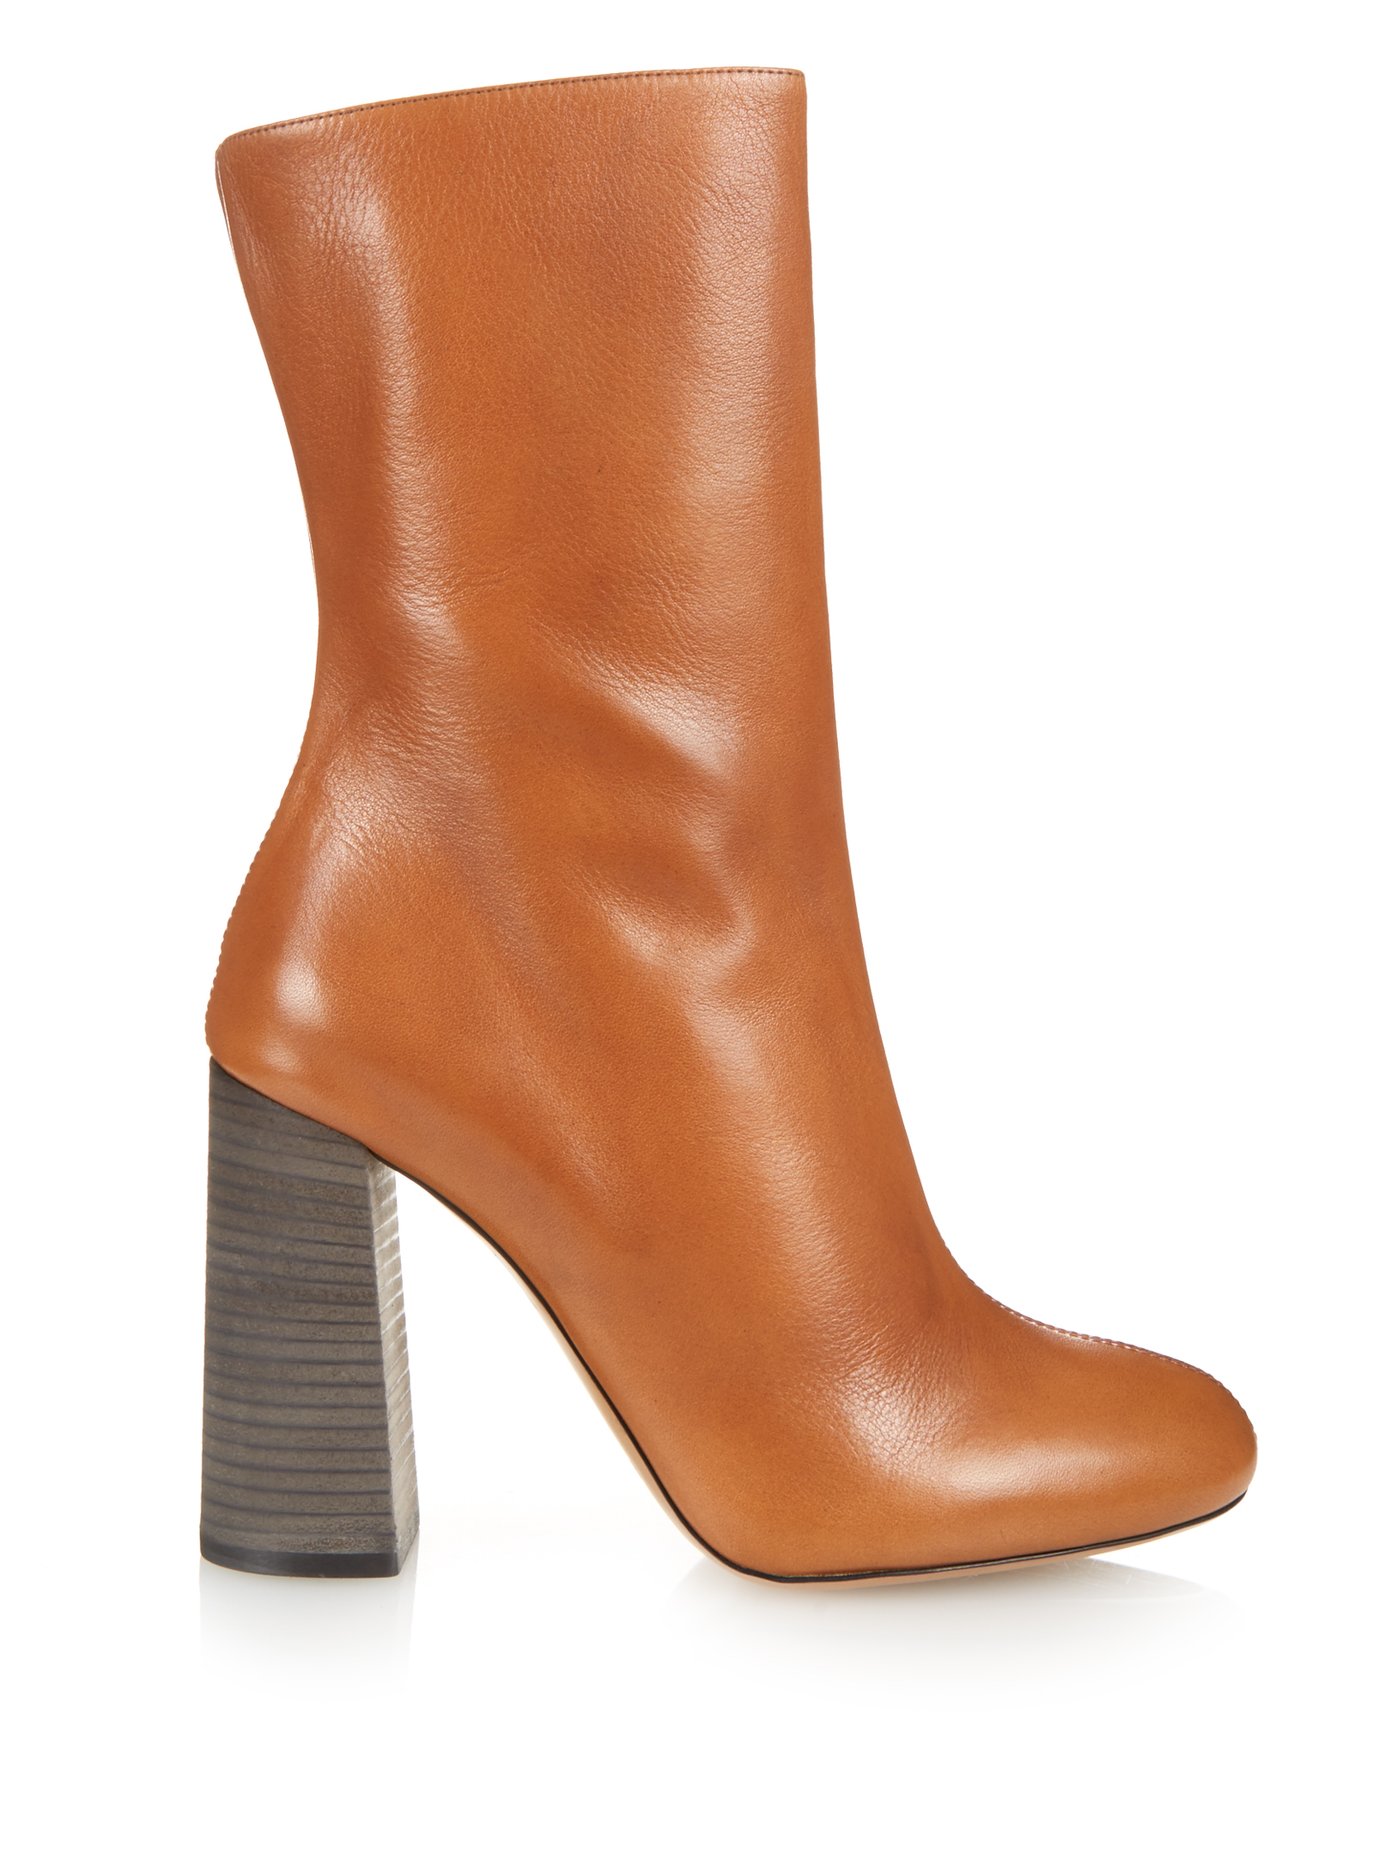 Leather calf-length boots | Chloé 